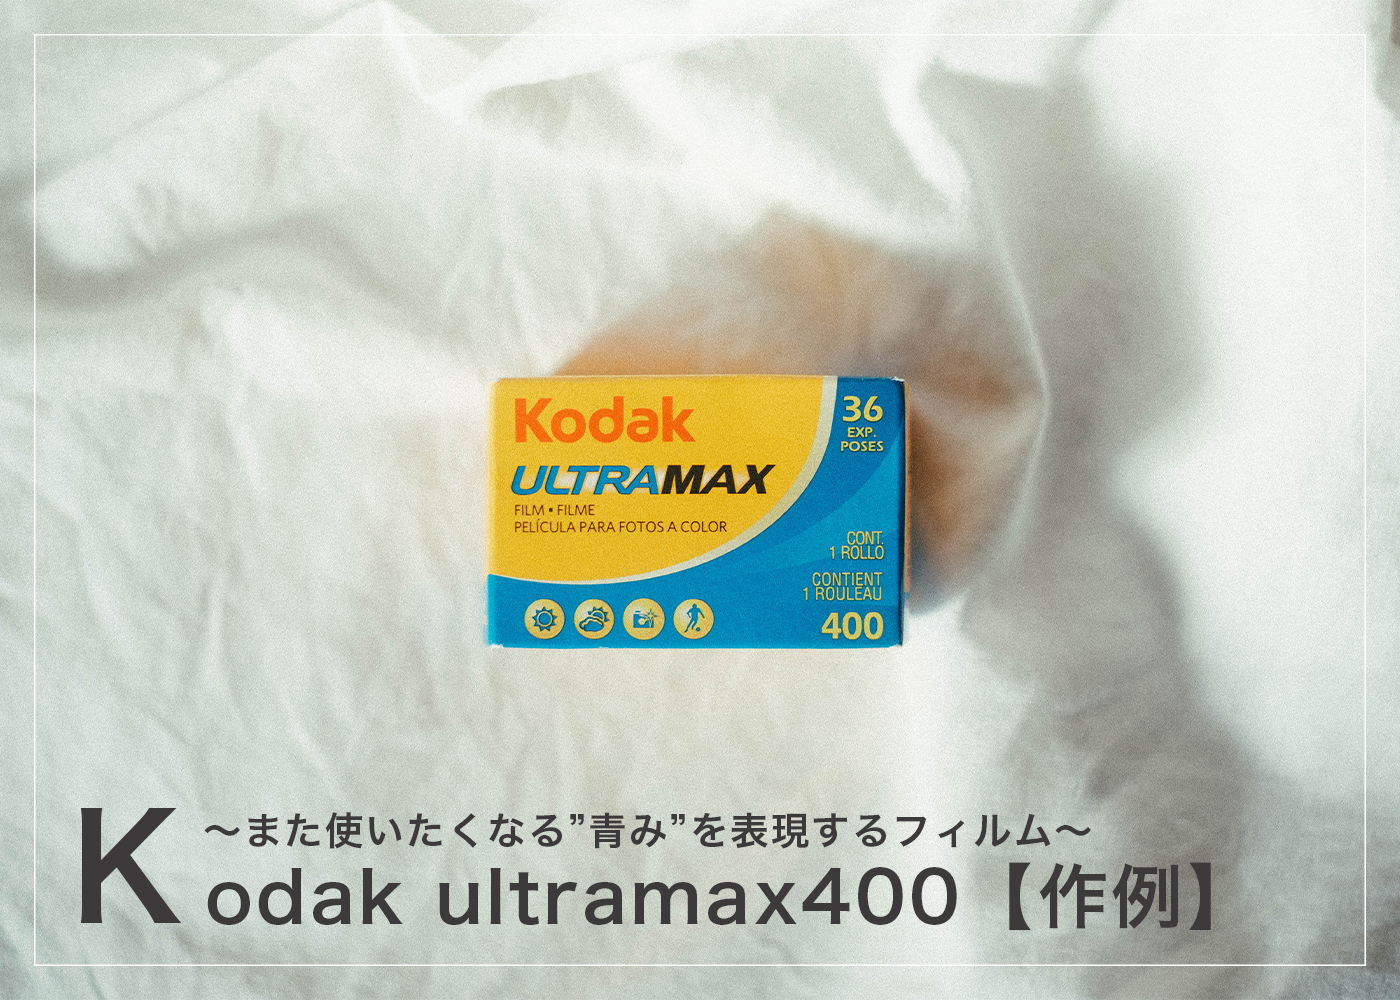 作例】「Kodak ULTRAMAX 400」また使いたくなる”青み”を表現するフィルム